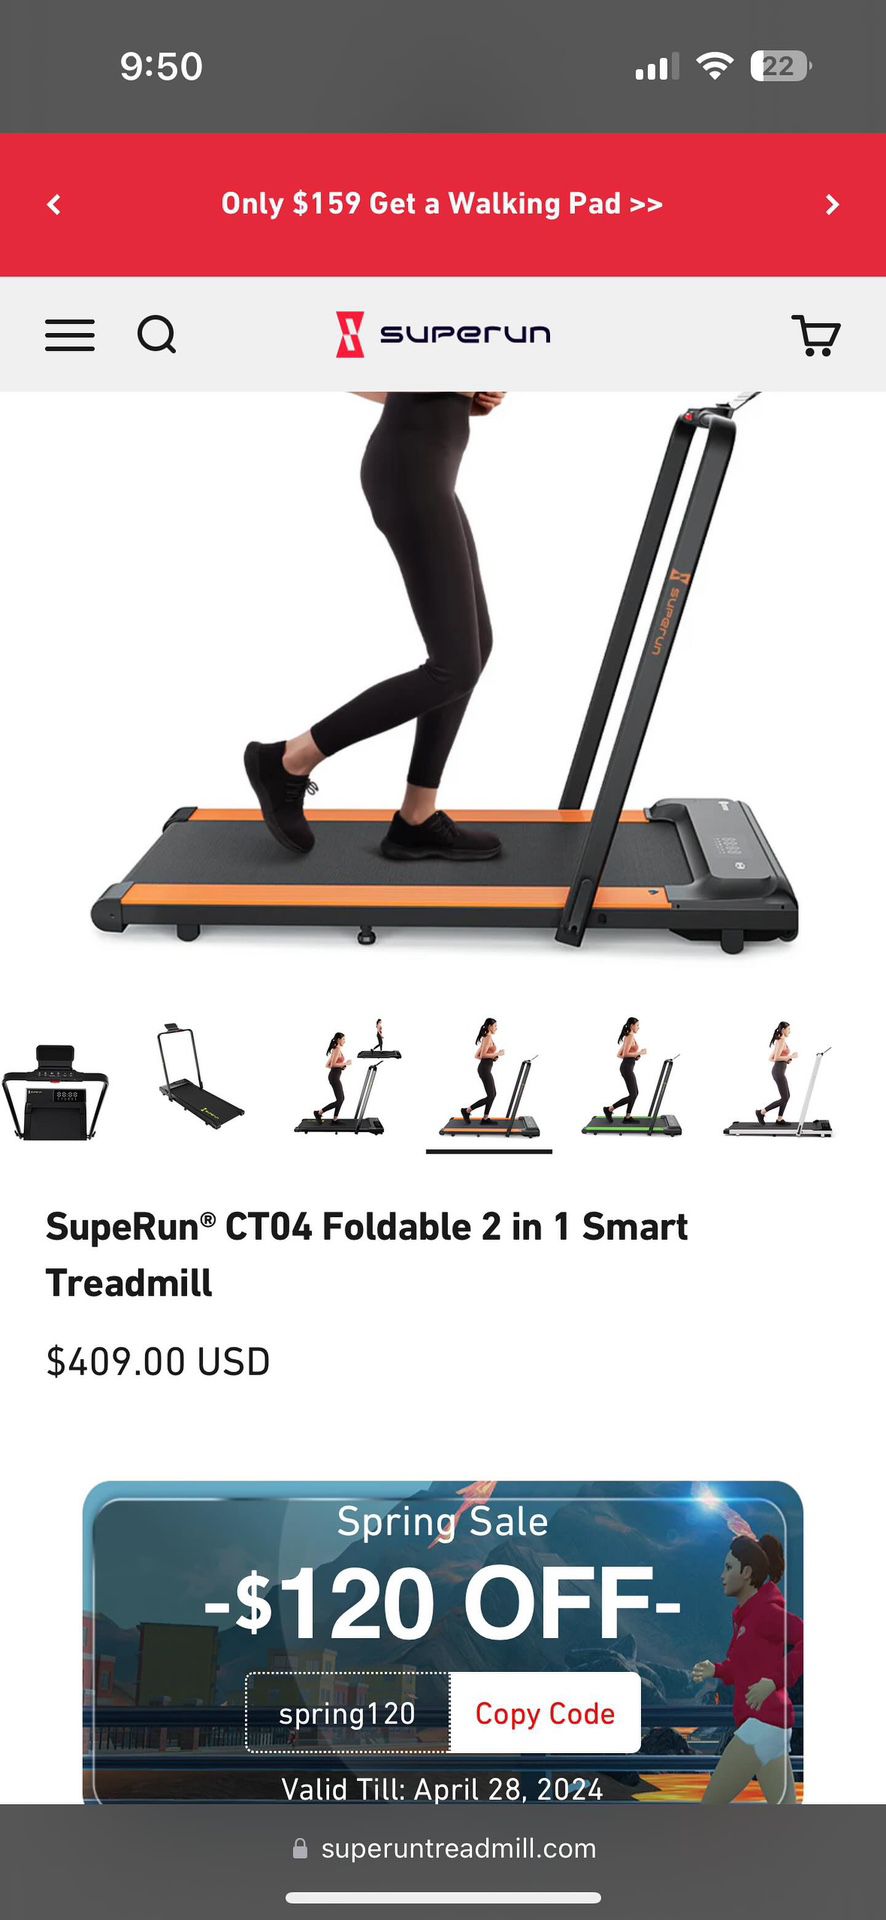 SupeRun CT04 Foldable 2 in 1 Smart Treadmill